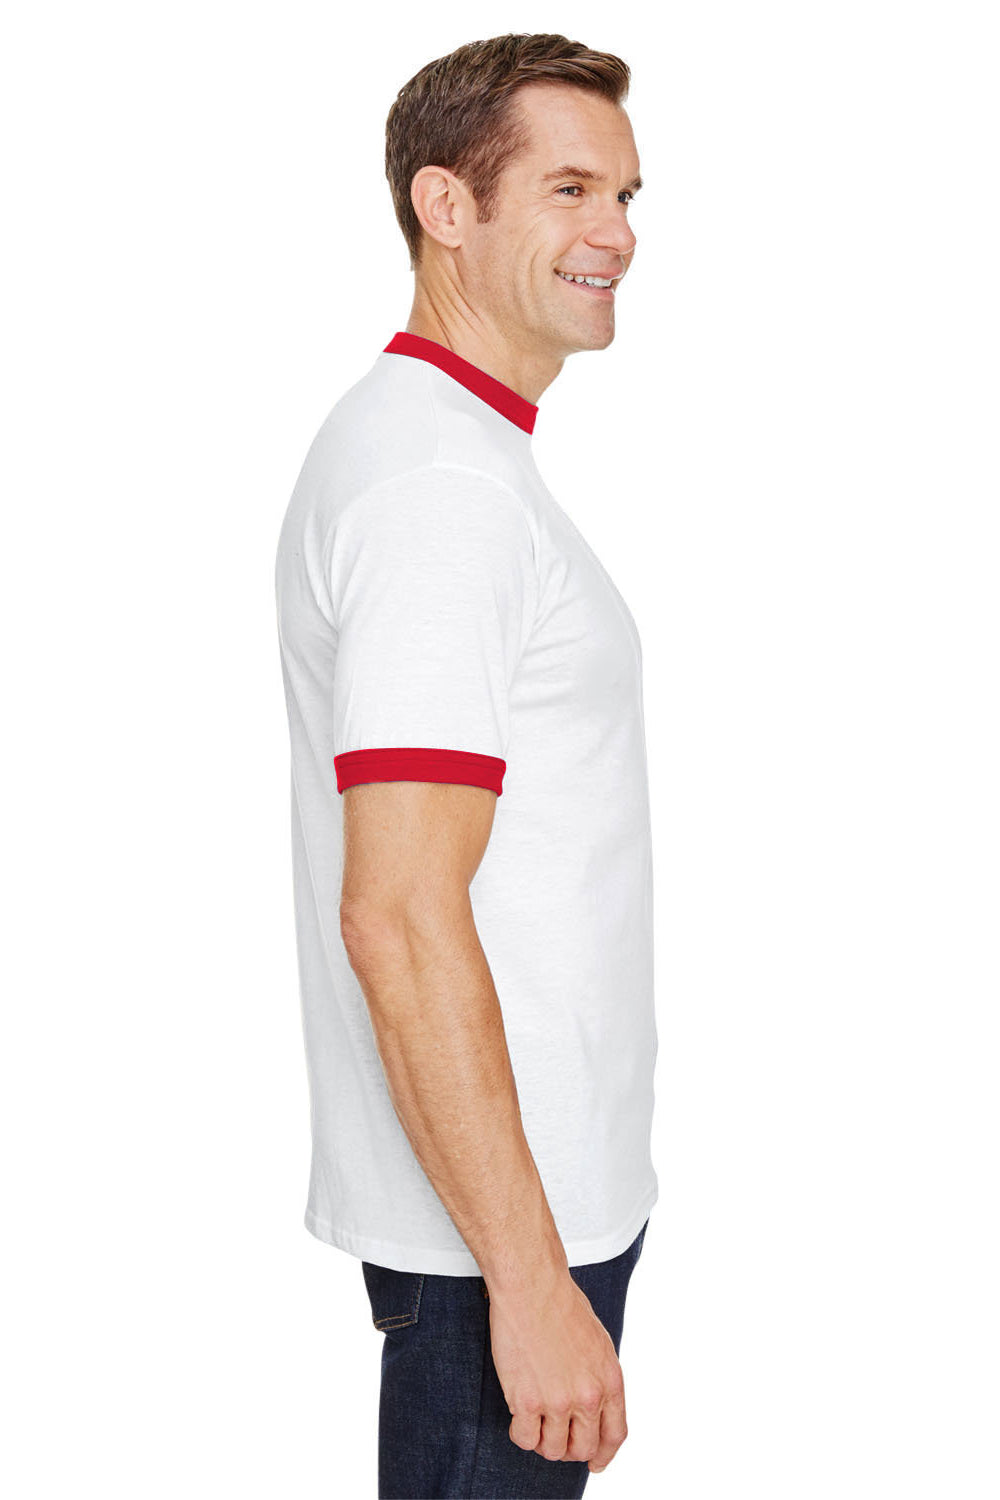 Augusta Sportswear 710 Mens Ringer Short Sleeve Crewneck T-Shirt White/Red Model Side